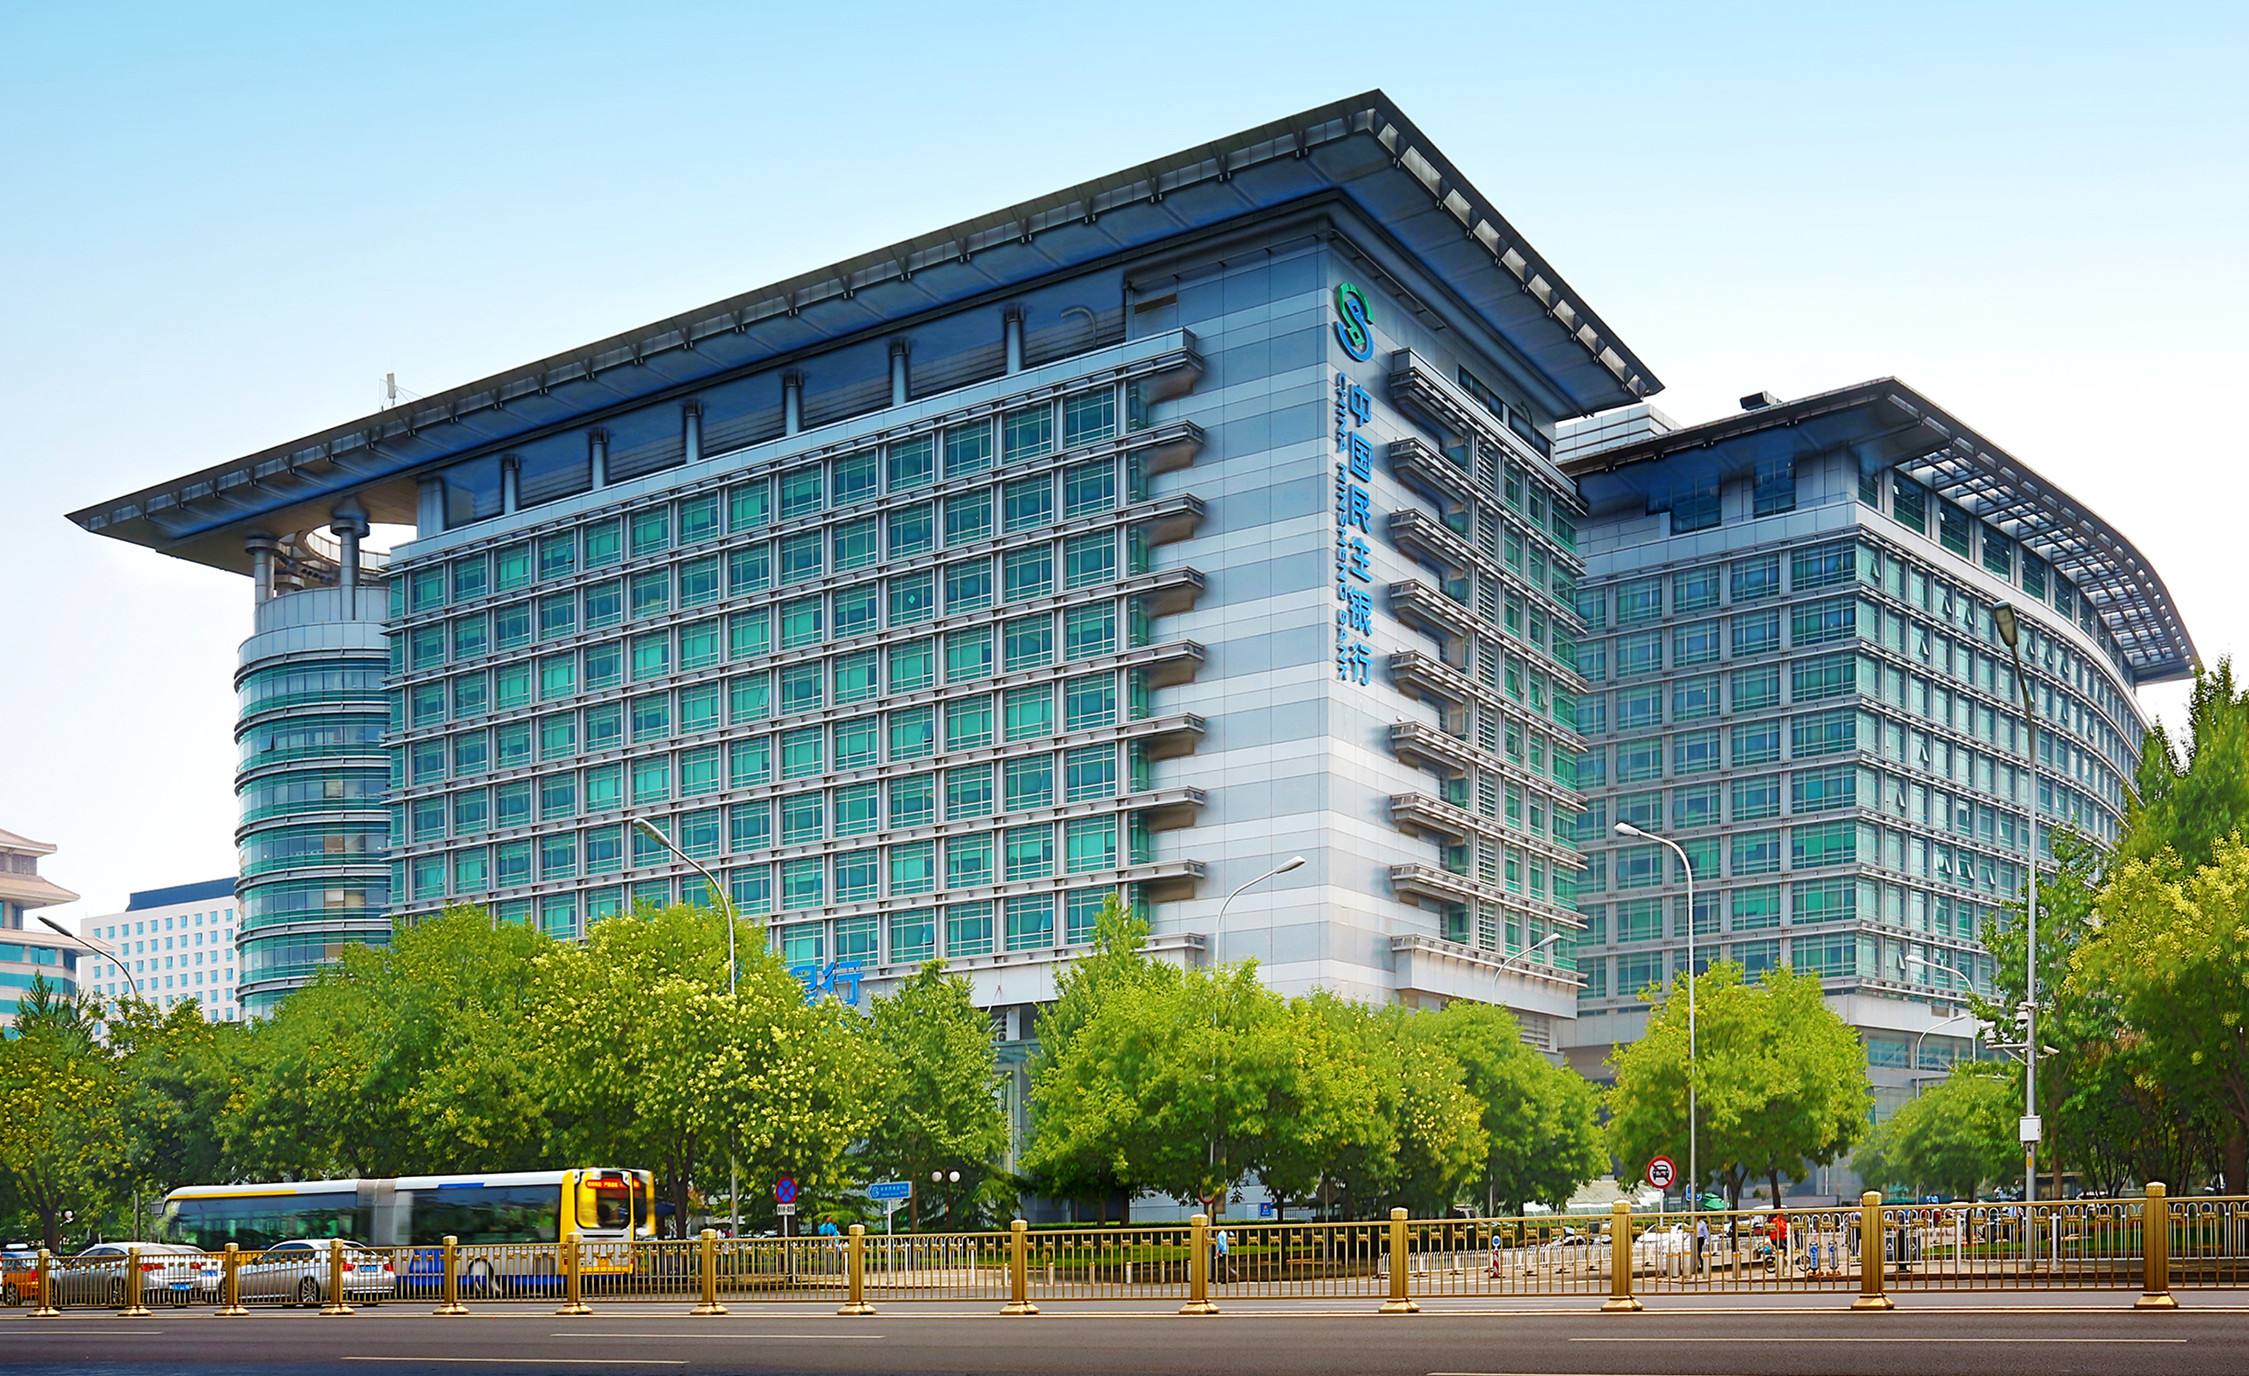 中国民生银行总行大楼图片